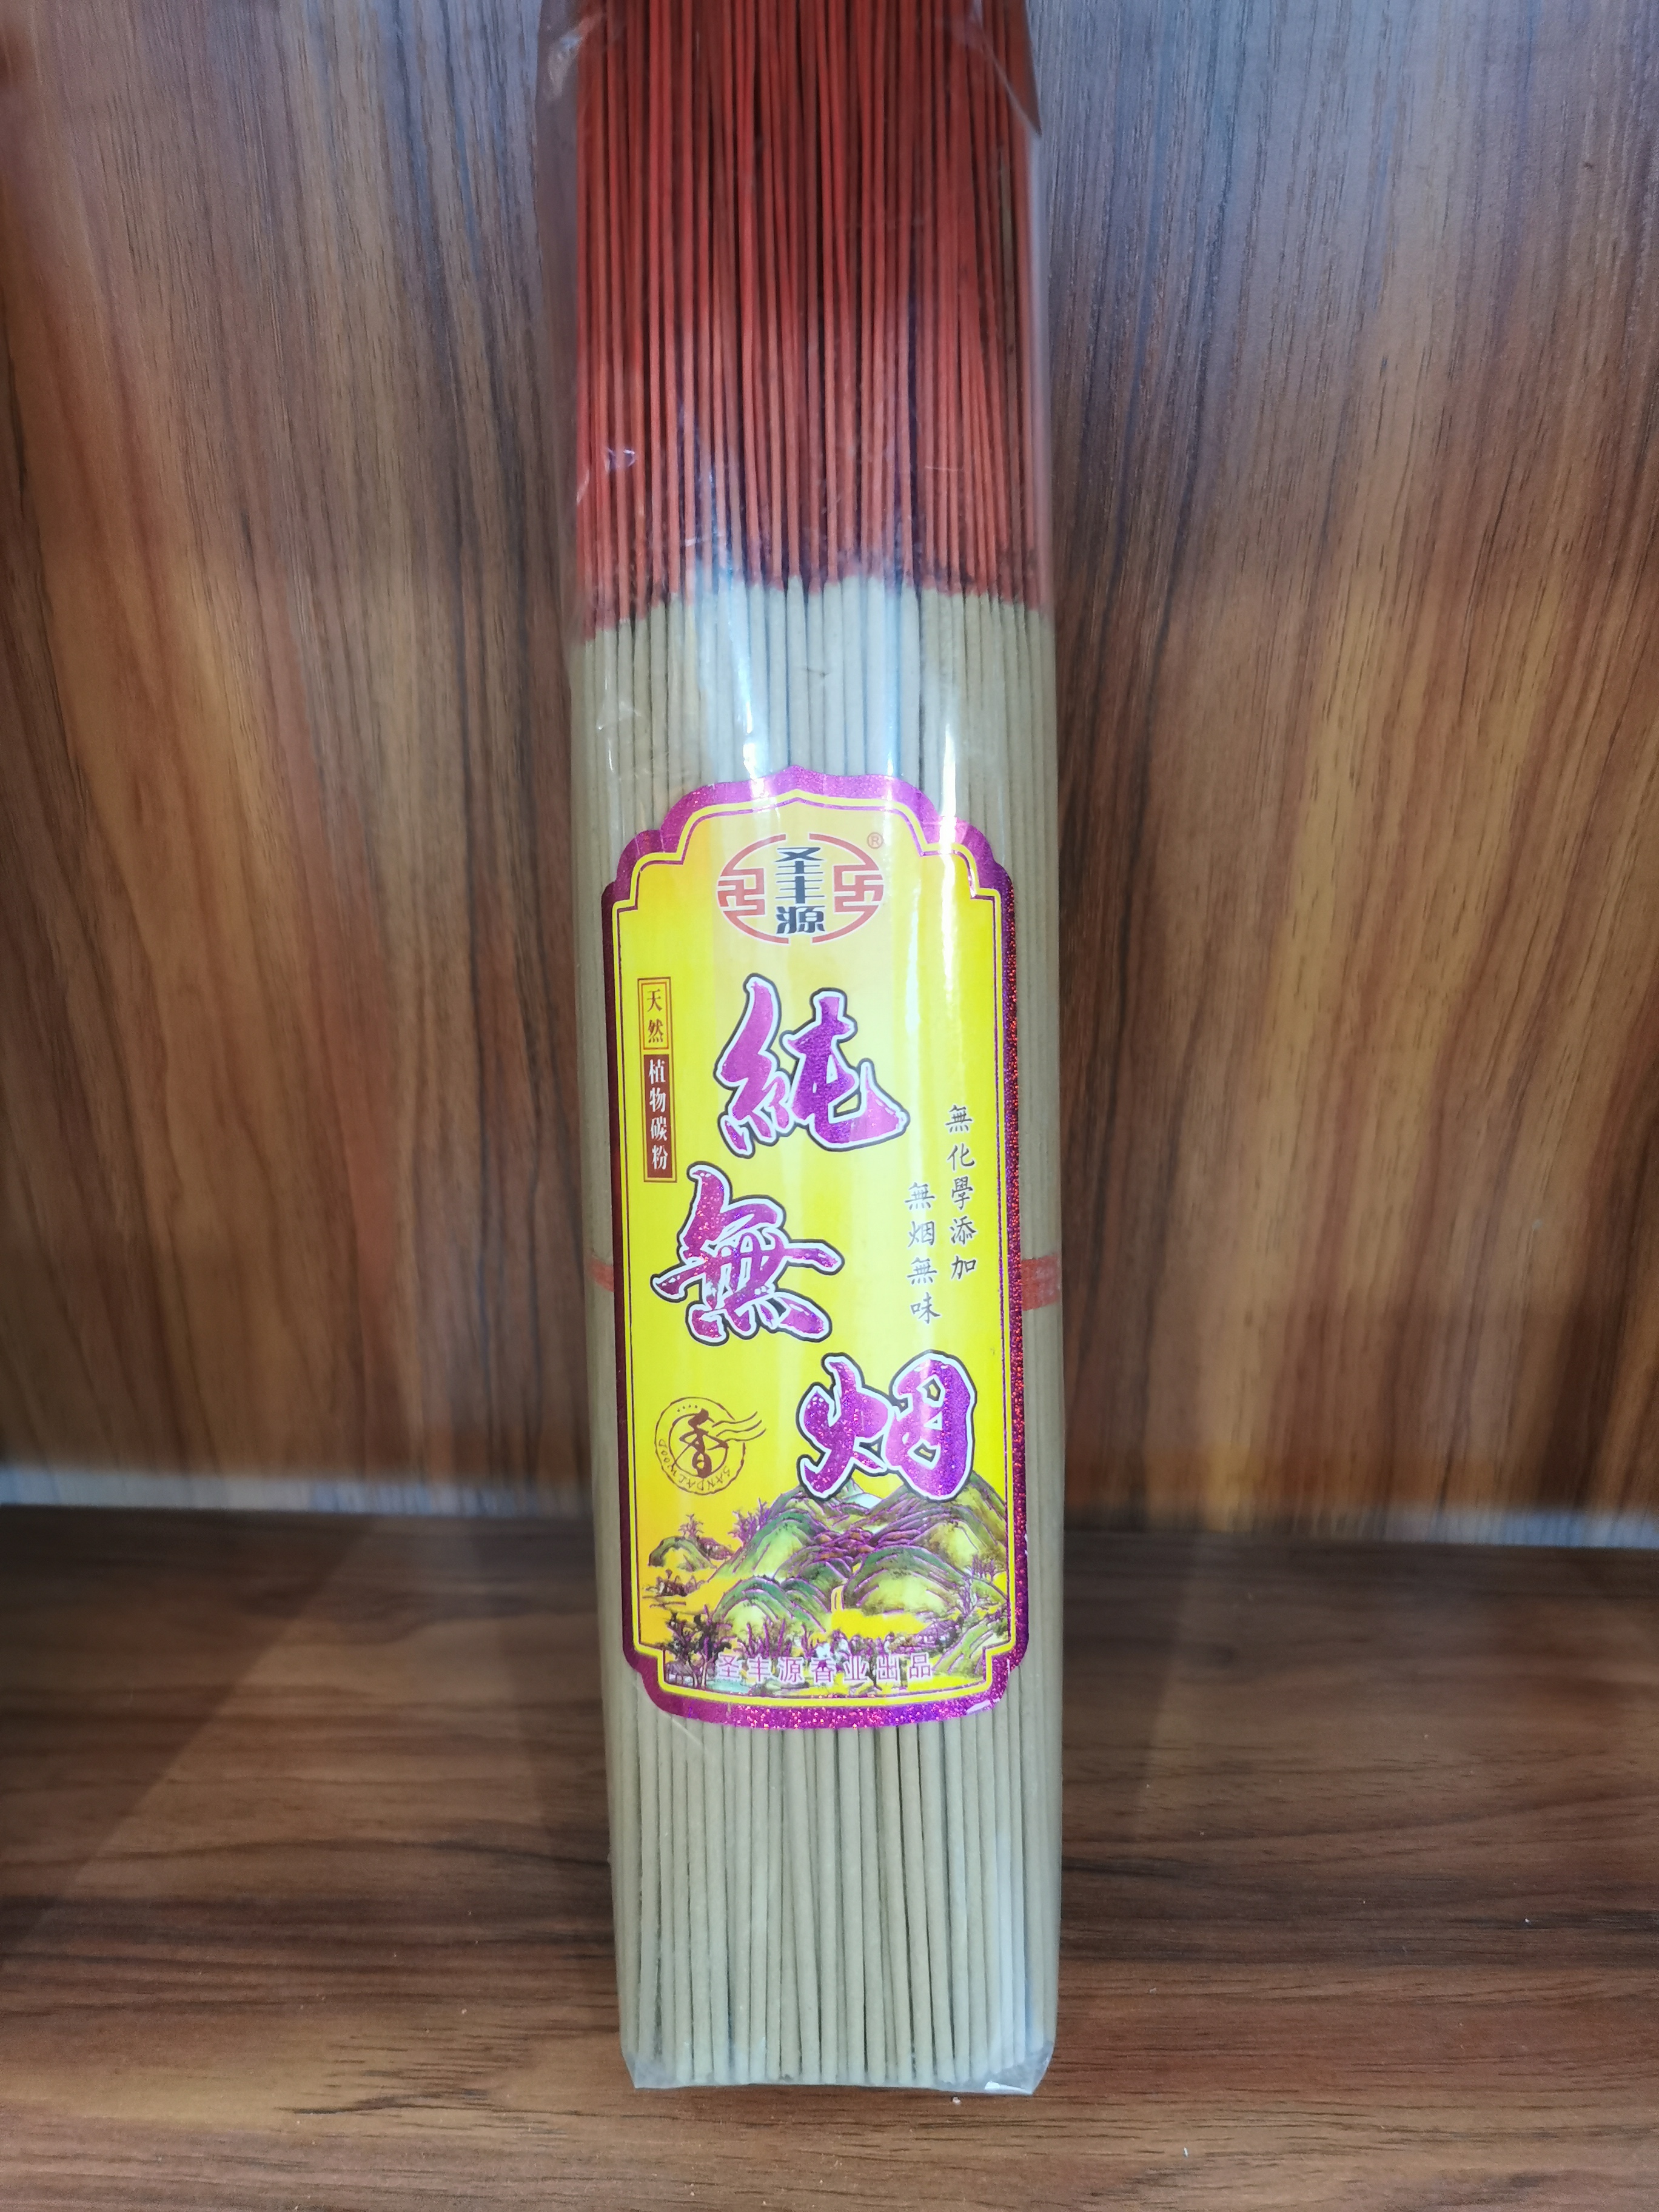 竹签香-卧香-熏香生产-圣丰源香业